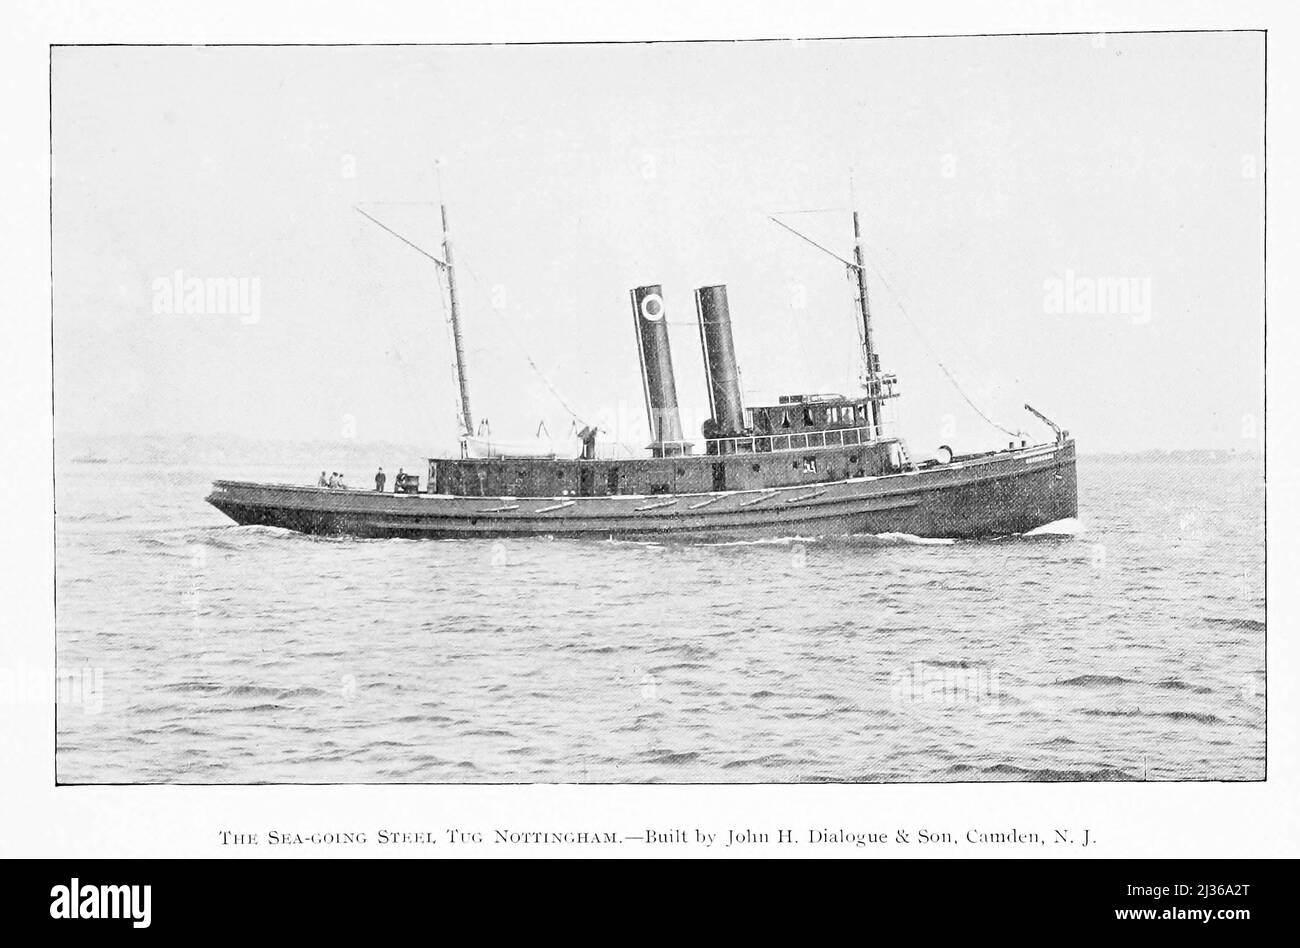 The Sea Going Tug Nottingham Construit par John H. Dialog and Sons, Camden NJ à partir du livre ' bateaux à vapeur et moteurs marins ' par G. Foster Howell, éditeur New York : American Shipbuilder 1896 Banque D'Images